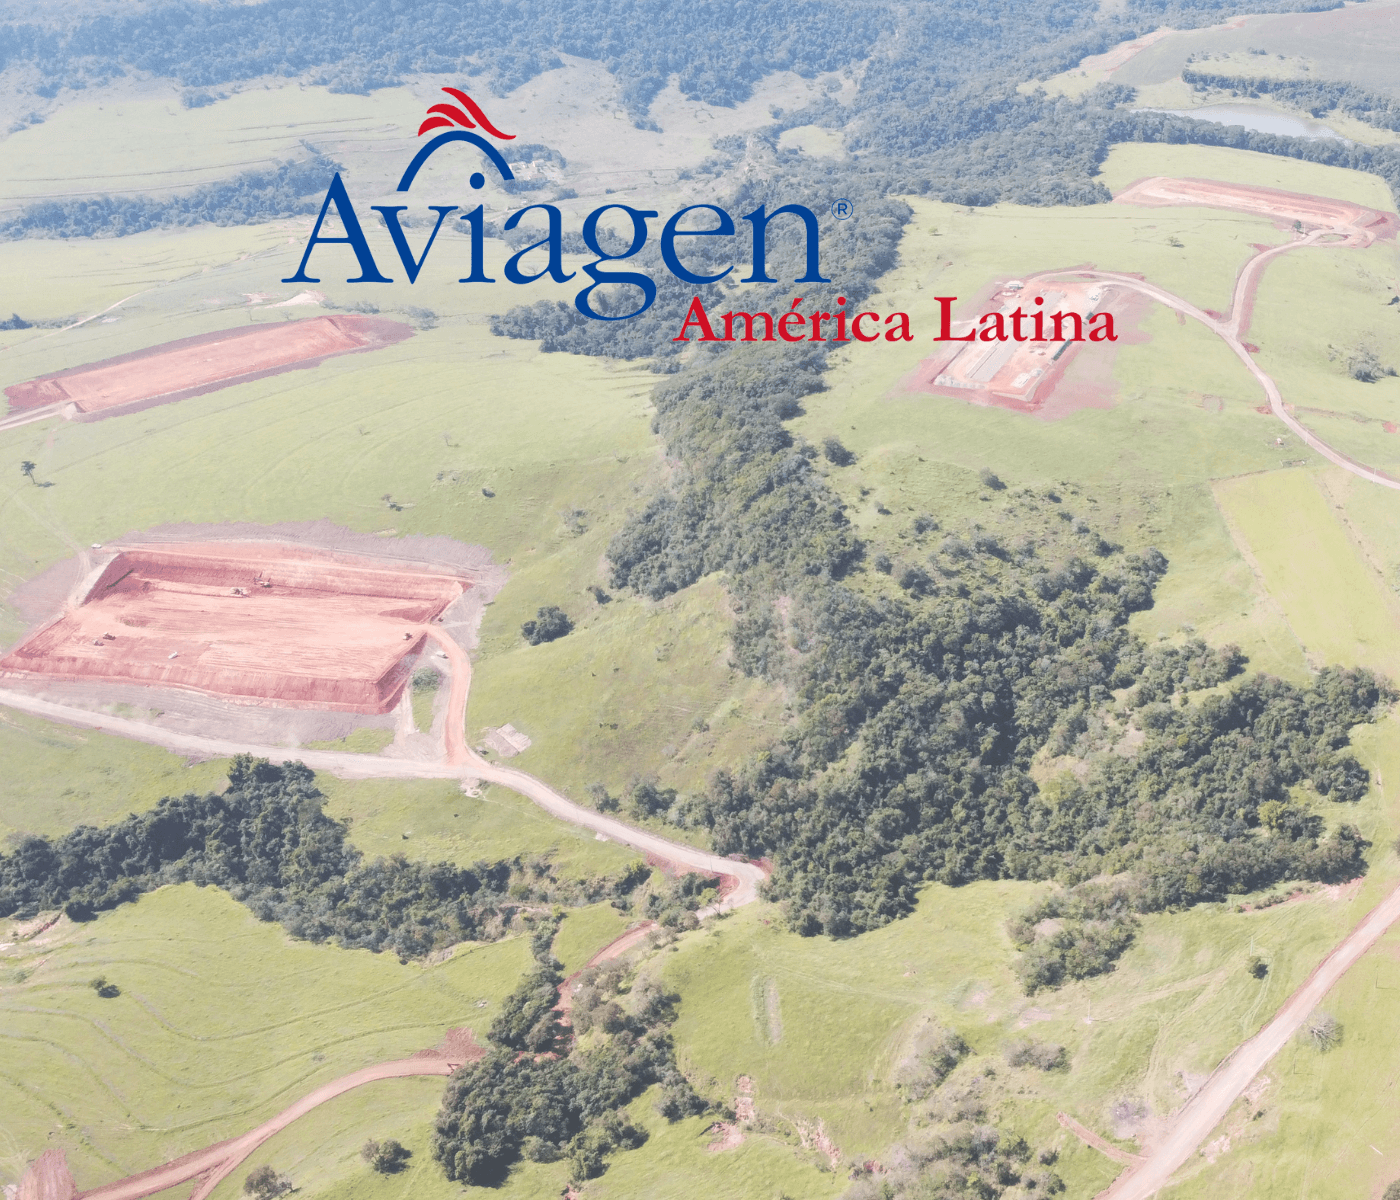 Nova granja de bisavós da Aviagen no Brasil segue em ritmo acelerado